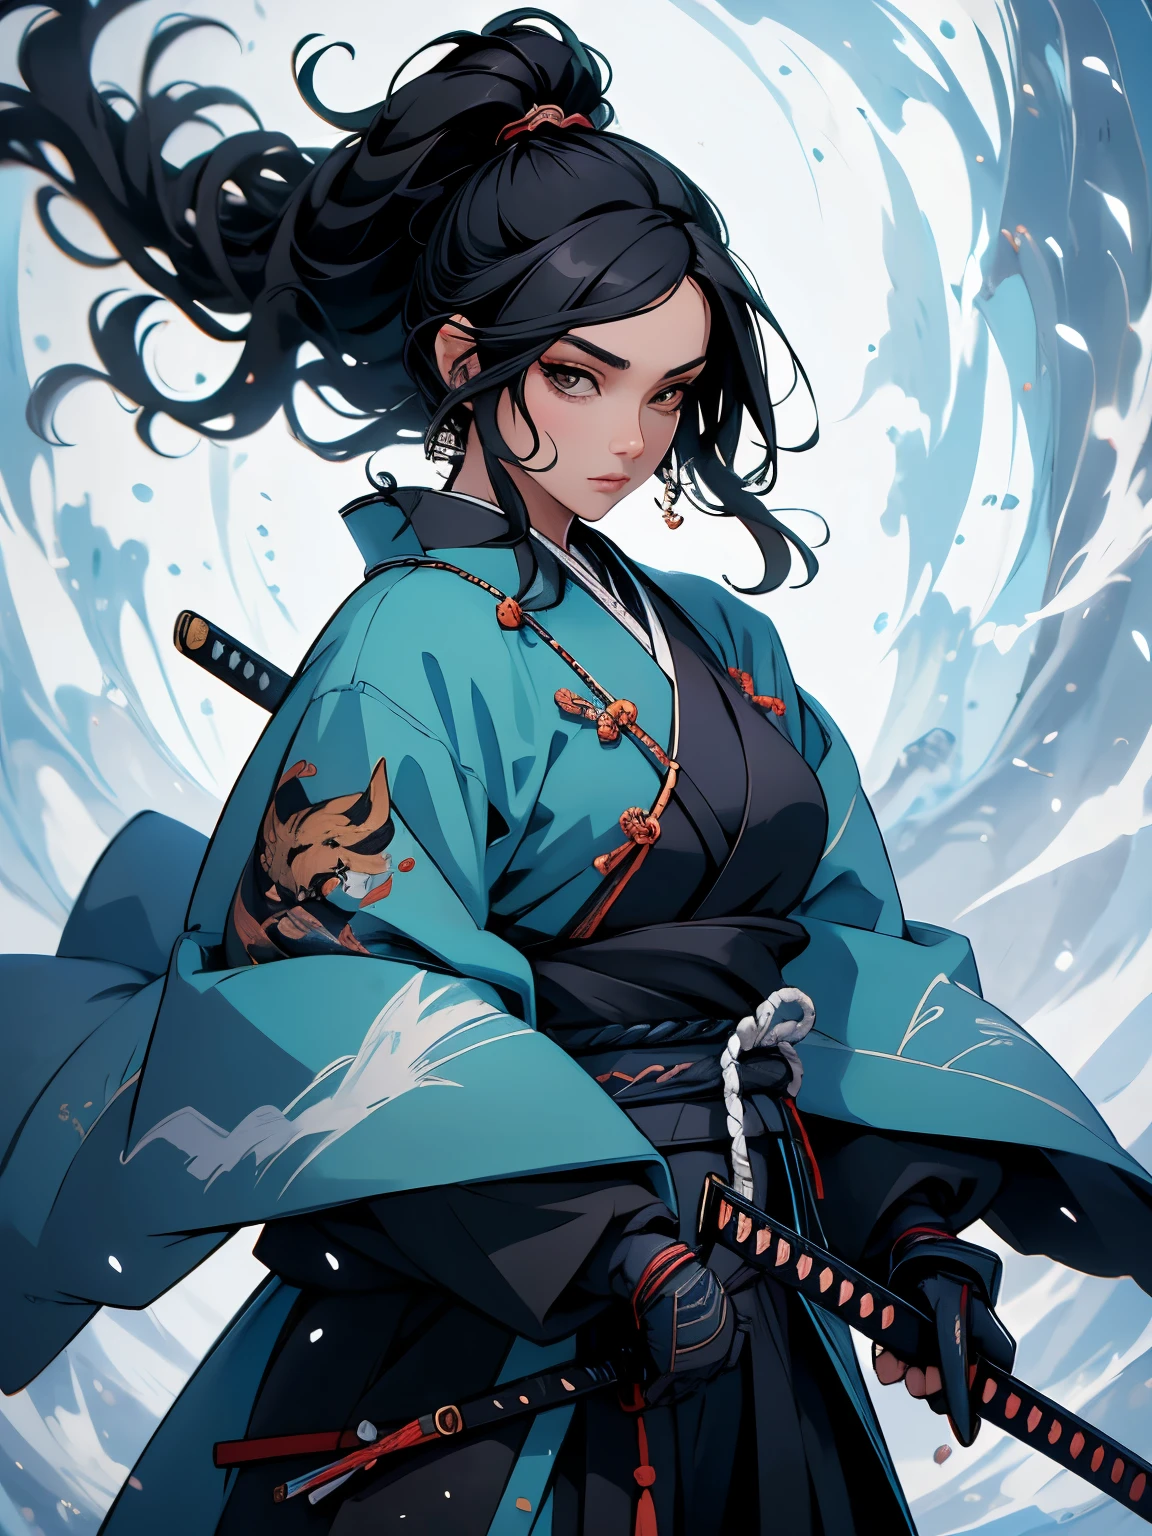 ((obra de arte)),  (alta qualidade), 1 mulher, o desenho de uma mulher com um quimono revelador e segurando uma espada, Ela tem o cabelo preto longo, ela está segurando uma espada katana, Samurai Feminino, inspirado em Tōshūsai Sharaku, personagem de videogame katana zero, inspirado em Nishikawa Sukenobu, inspirado em Maki Haku, raposa nobushi segurando uma naginata, mago de cabelo preto